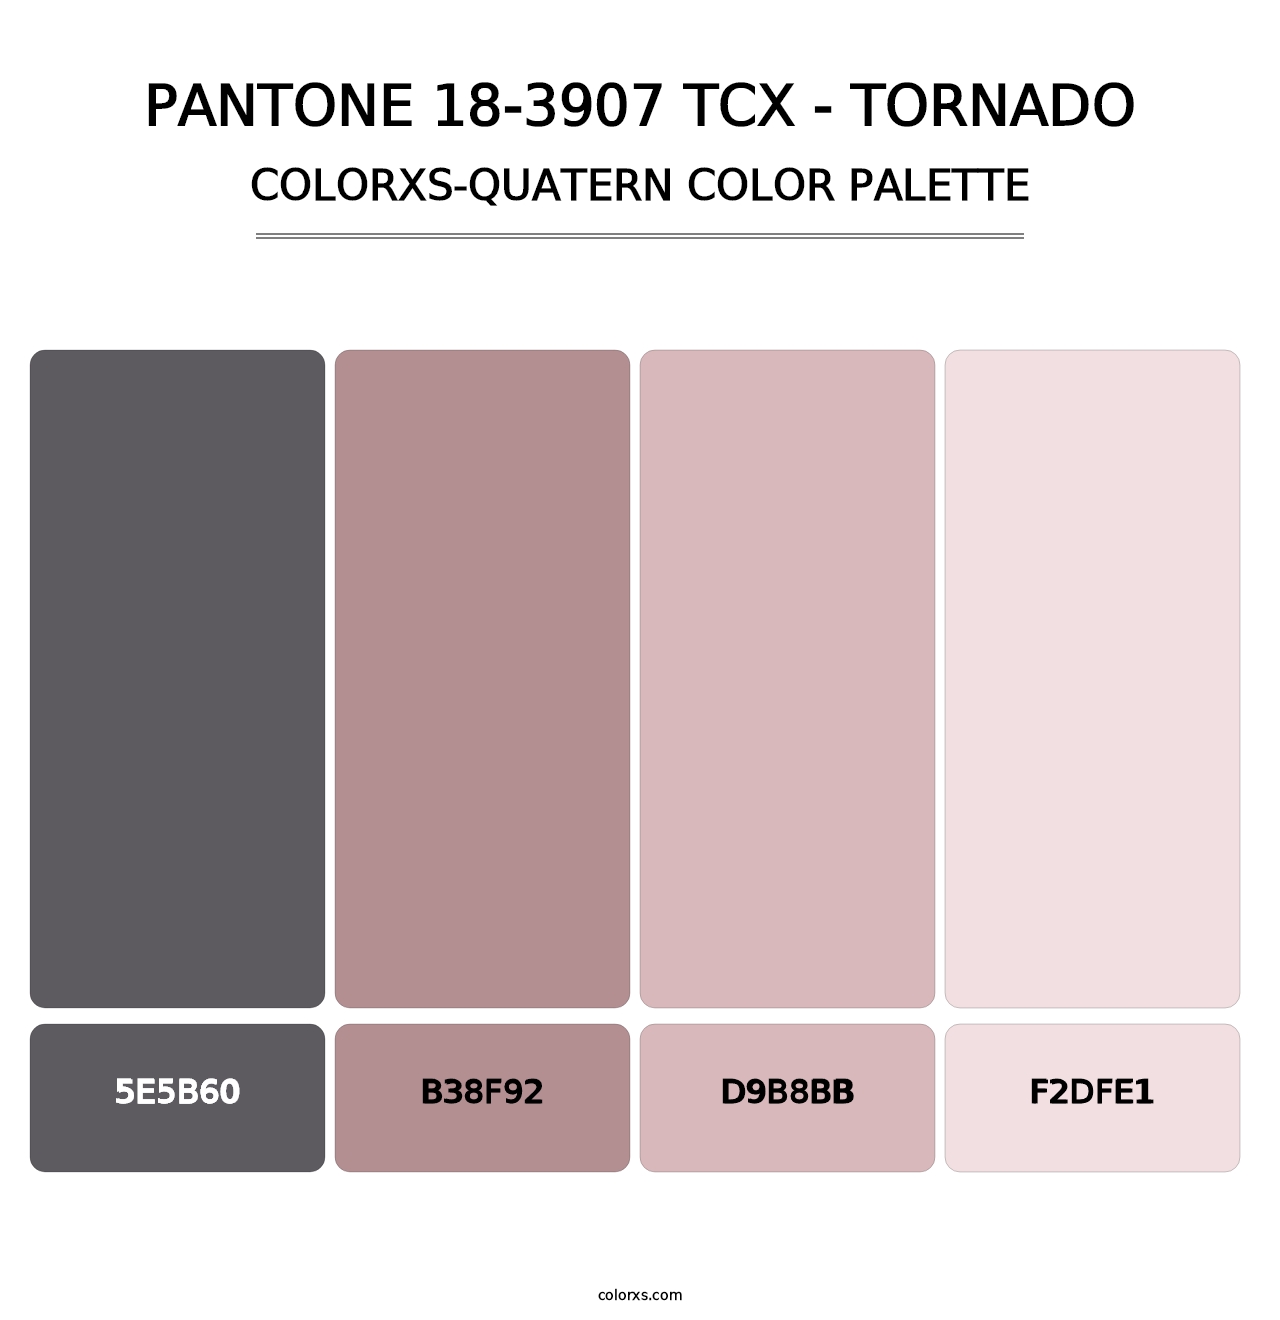 PANTONE 18-3907 TCX - Tornado - Colorxs Quatern Palette